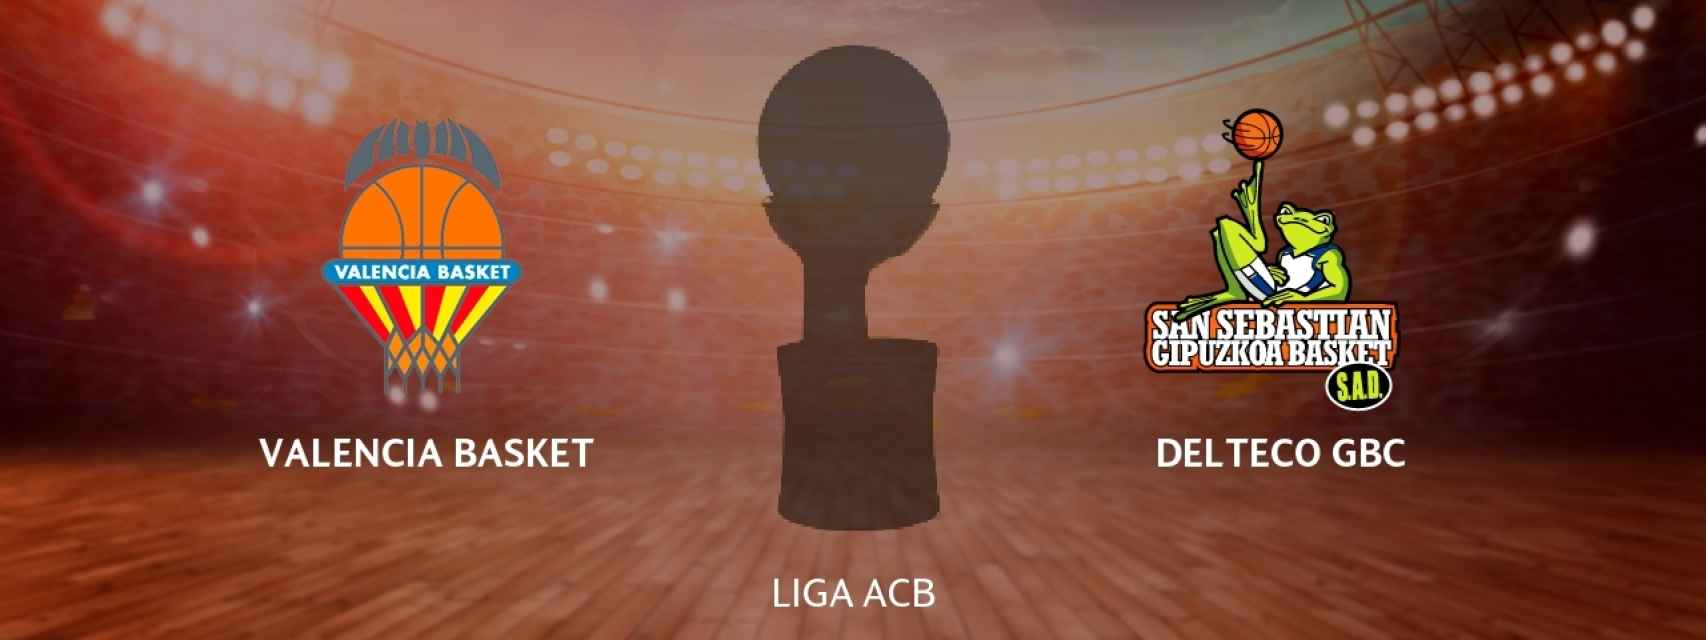 Valencia Basket - Delteco GBC